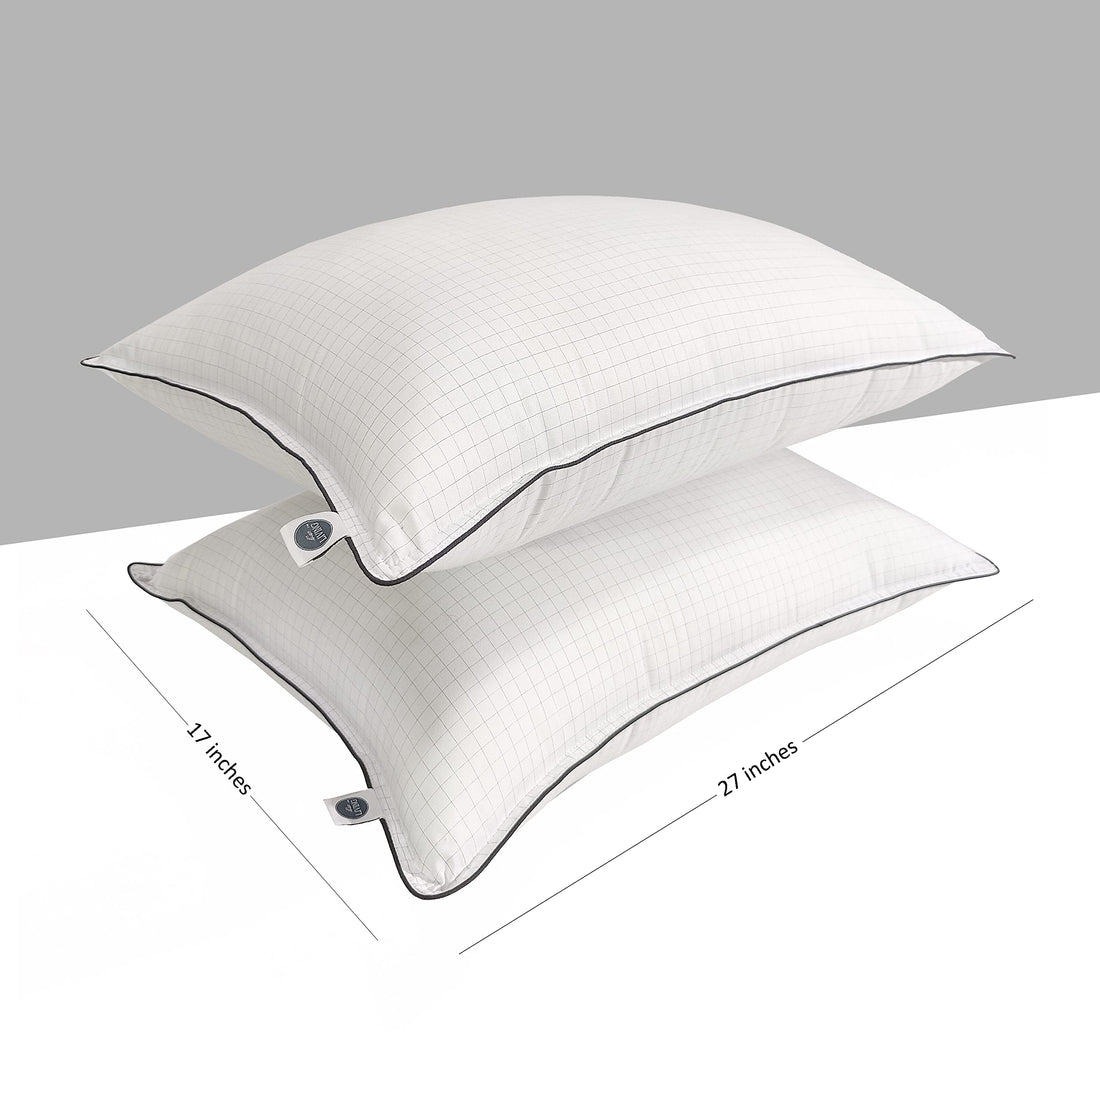 Anti-Stress Pillow Set of 2, White, 17 x 27 Inches